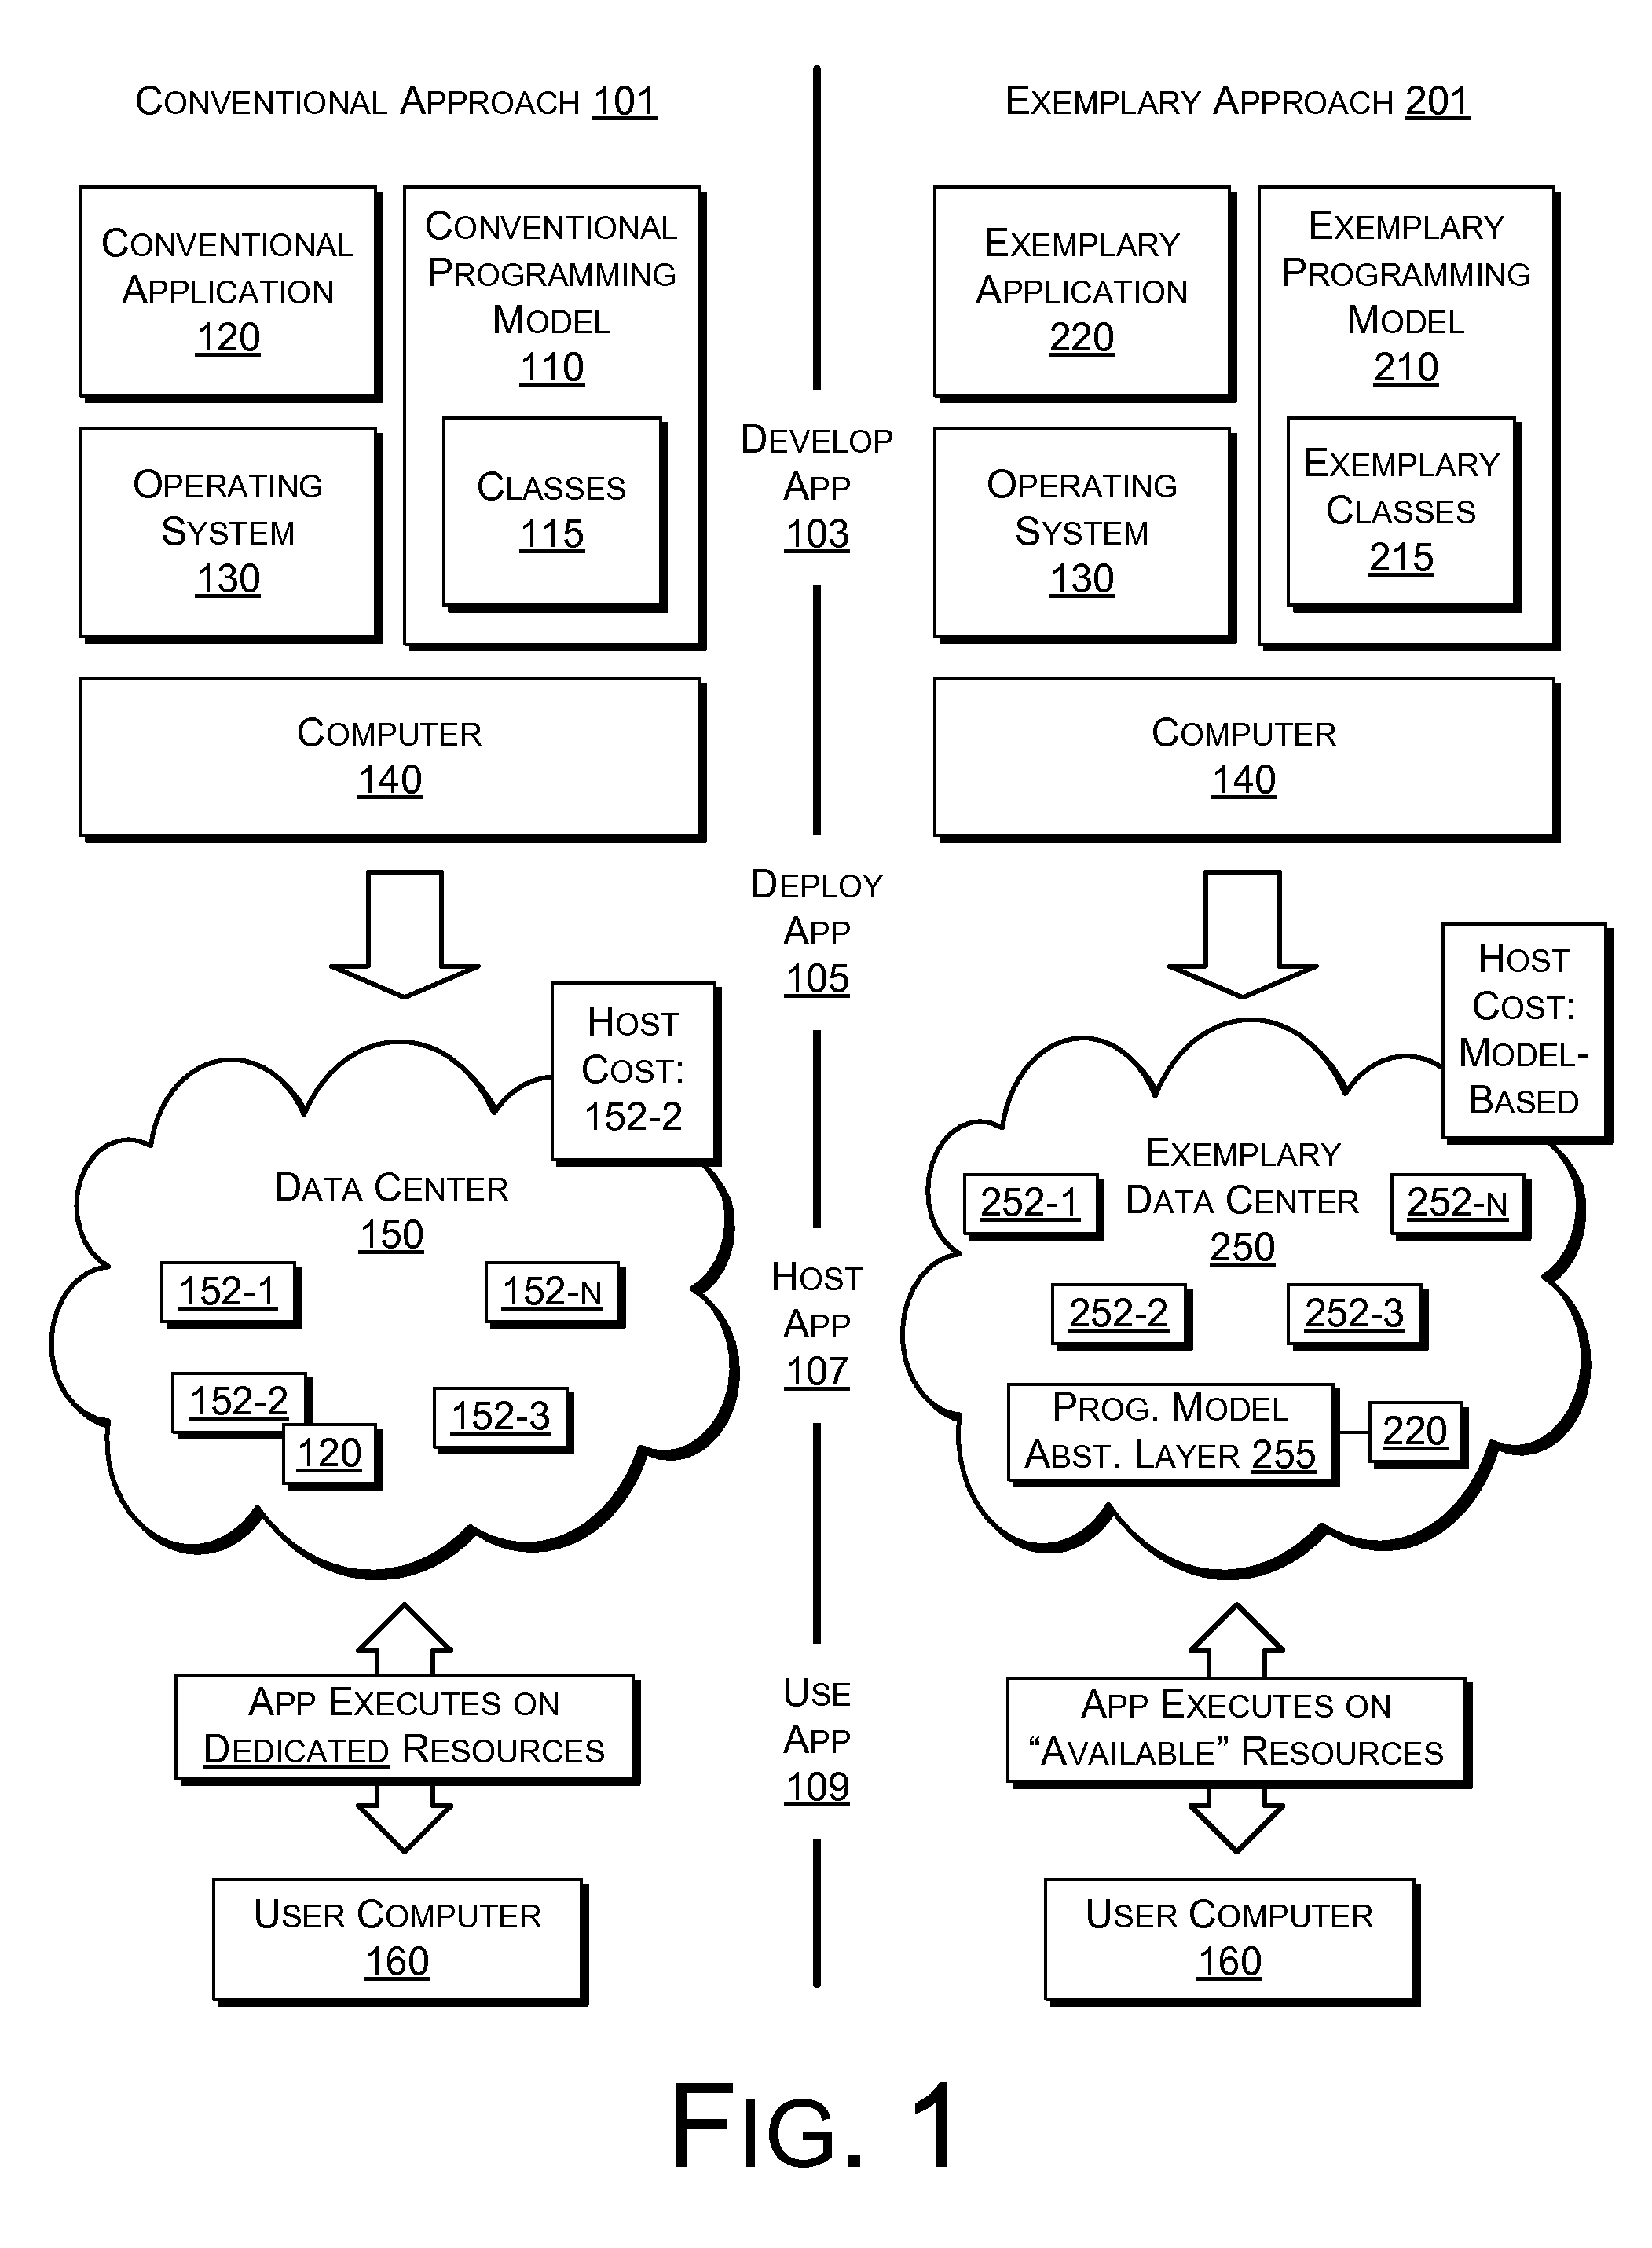 Data center programming model